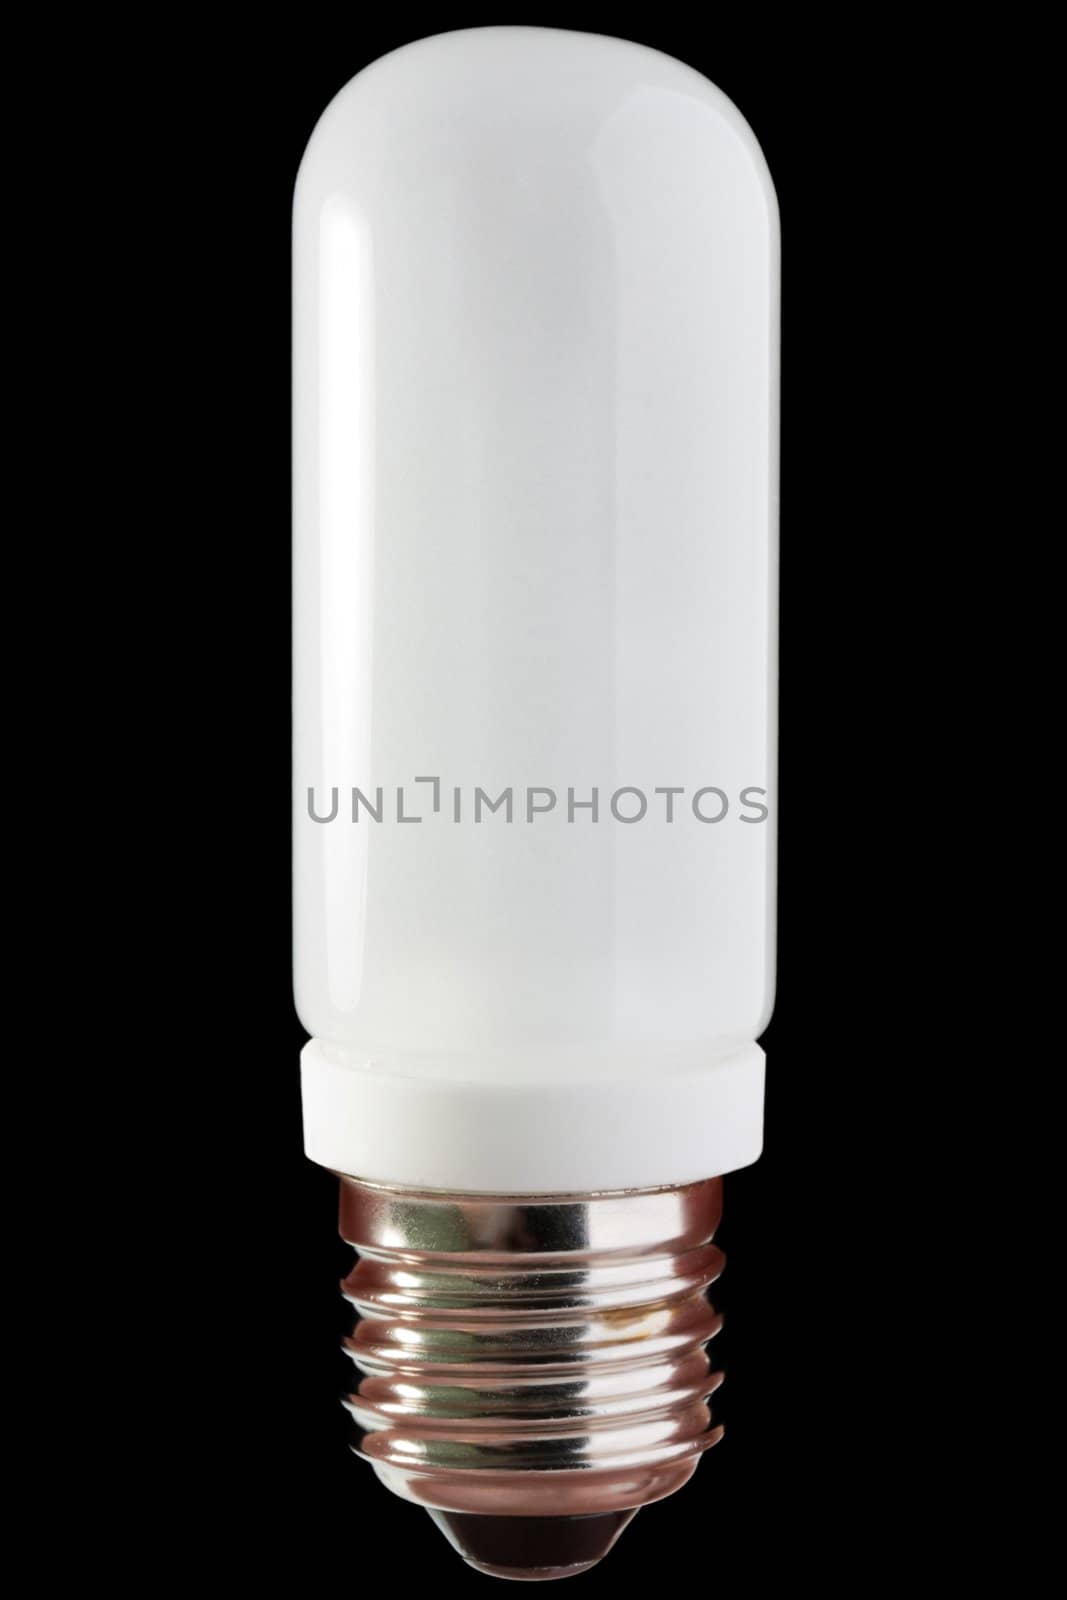 Halogen lighting equipment lamp light glass bulb